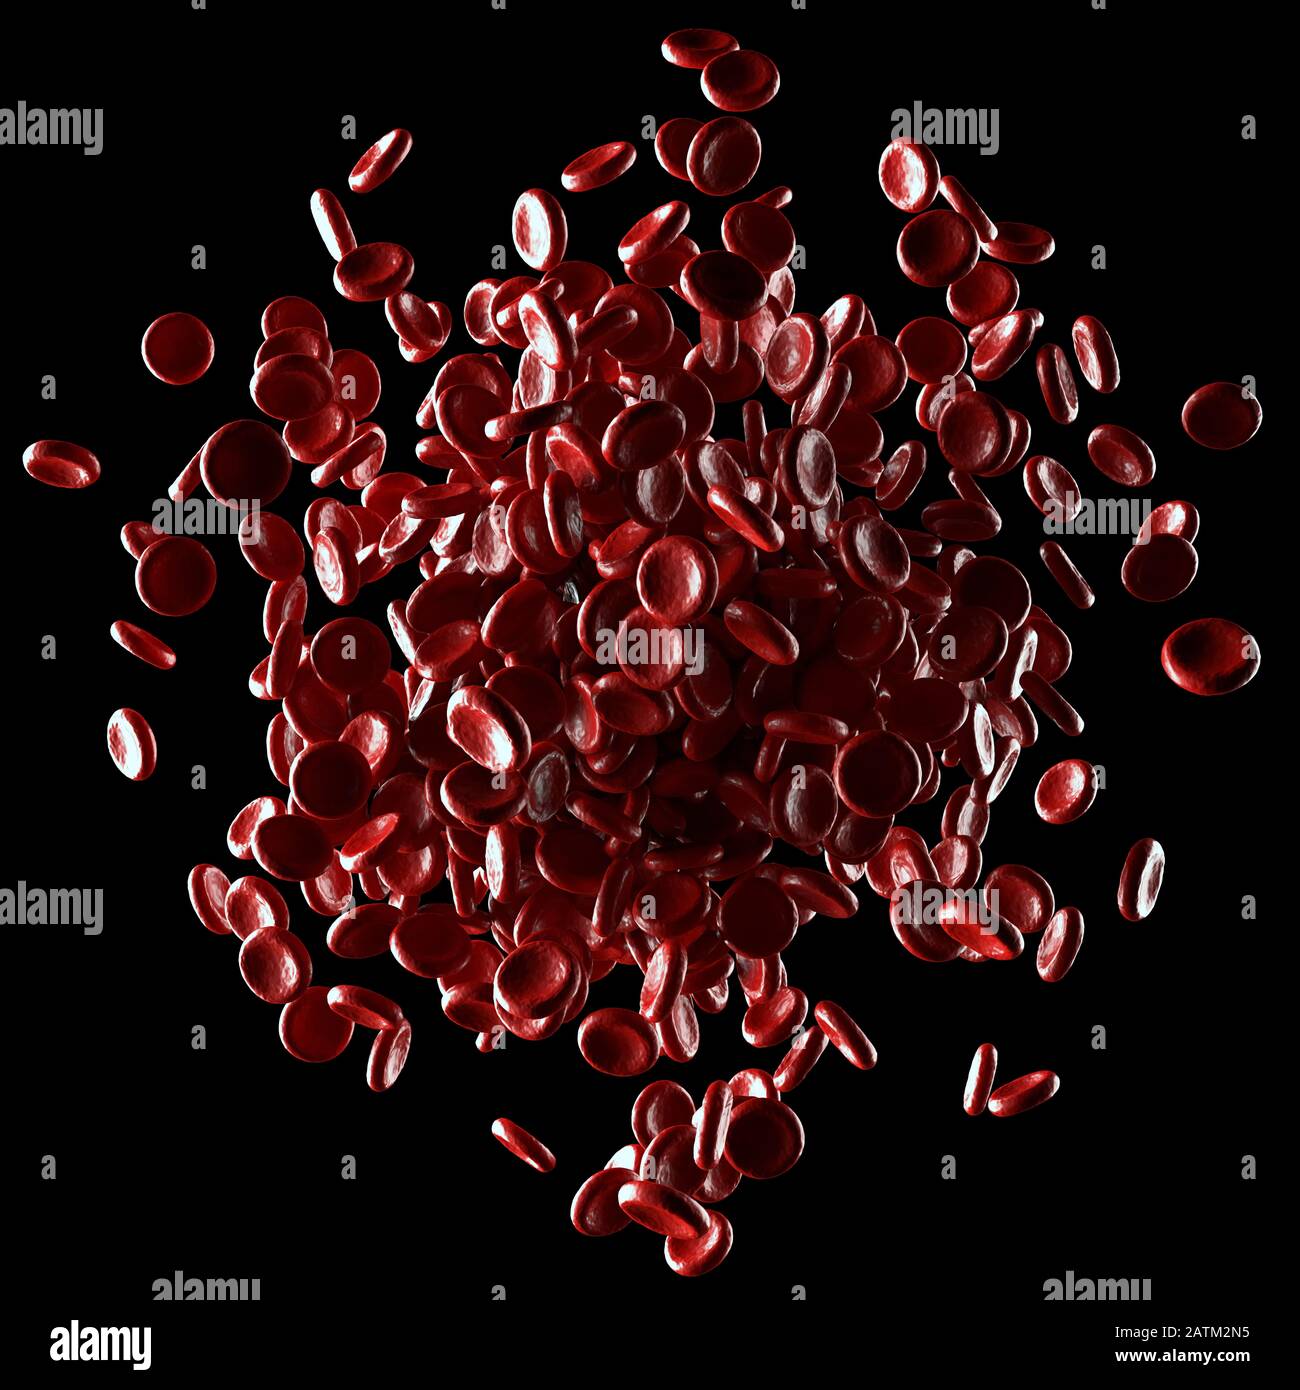 Les globules rouges débordent sur fond noir. Illustration tridimensionnelle, image conceptuelle. Chemin d'écrêtage inclus. Banque D'Images